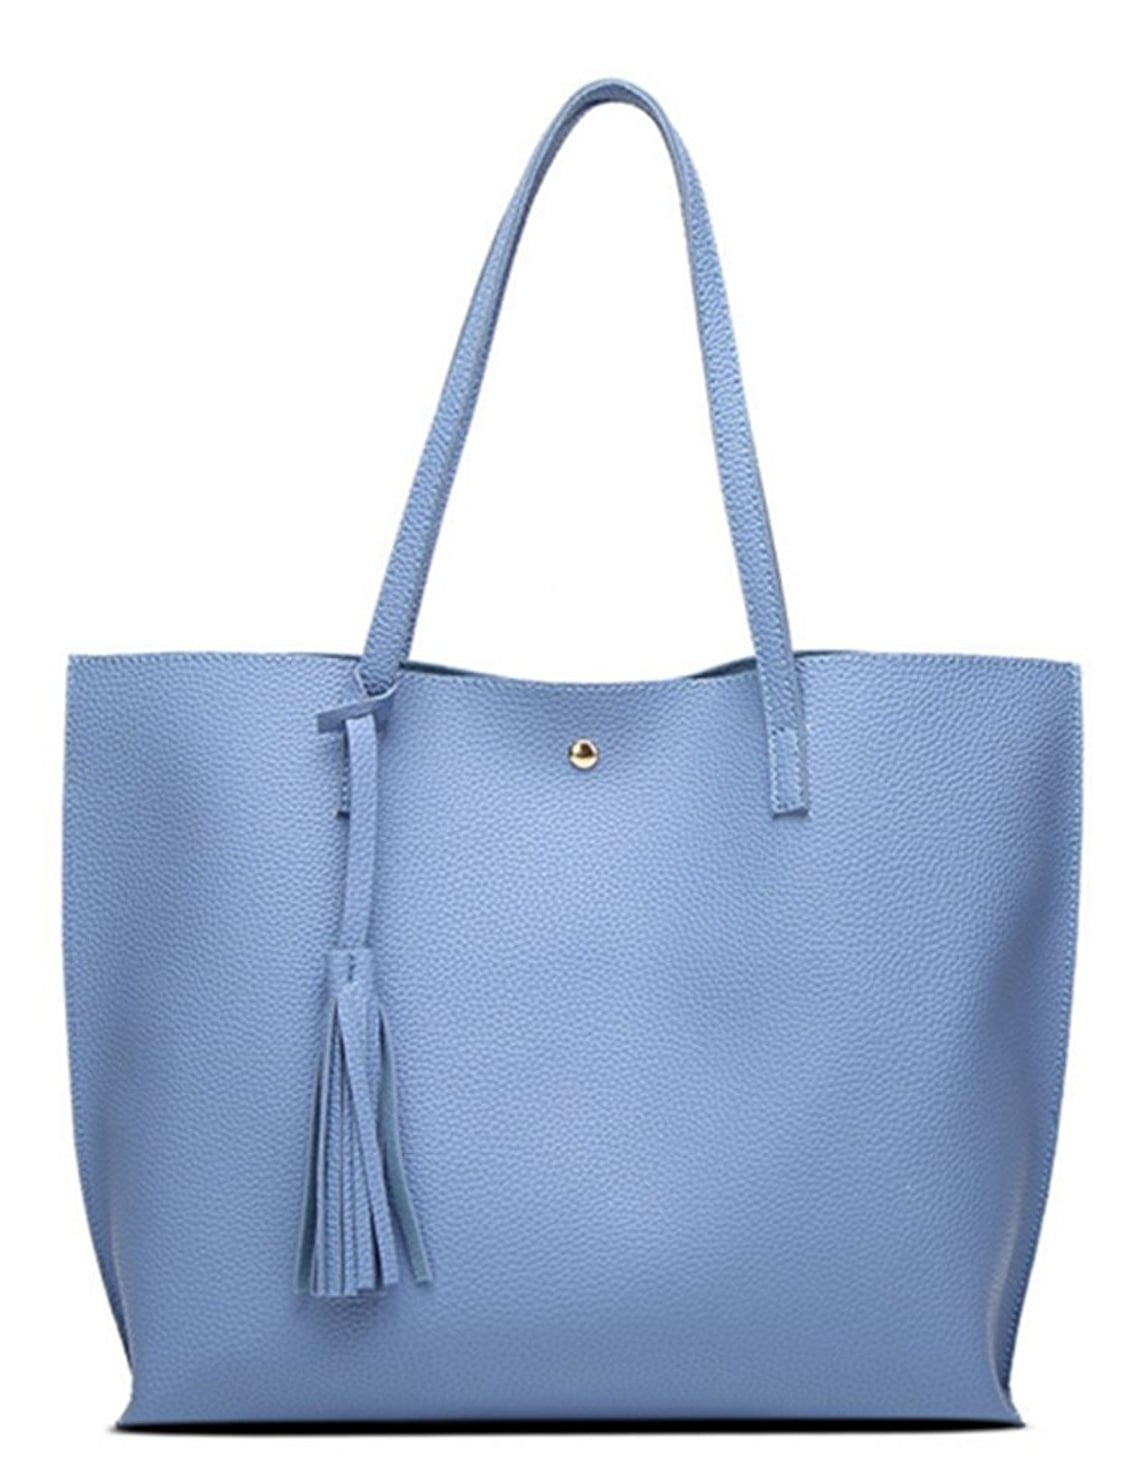 Women Tote Bags Top Handle Satchel Handbags PU Pebbled Leather Tassel ...